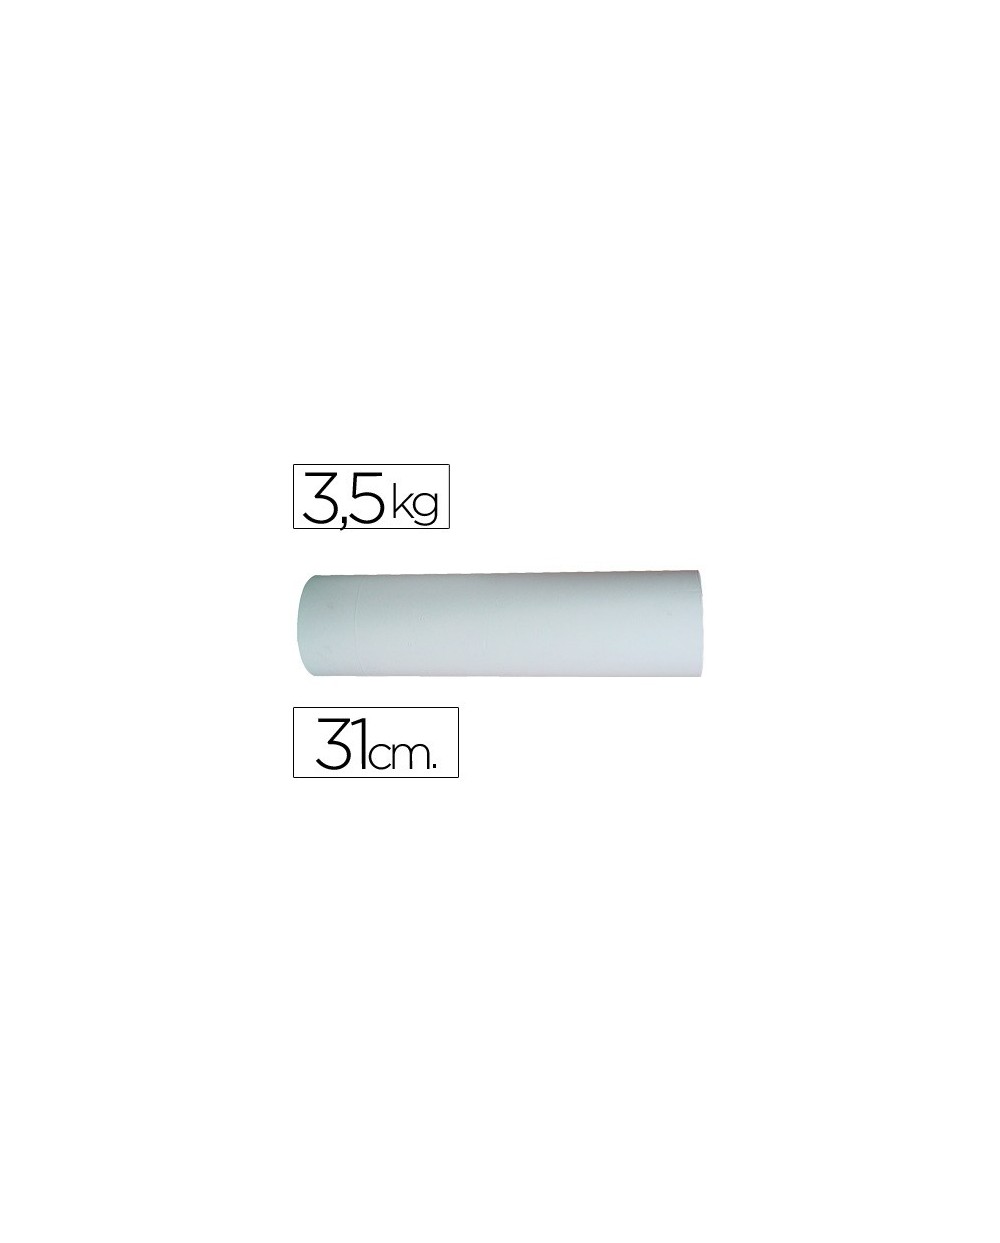 Papel blanco bobina de 31 cm 35 kg